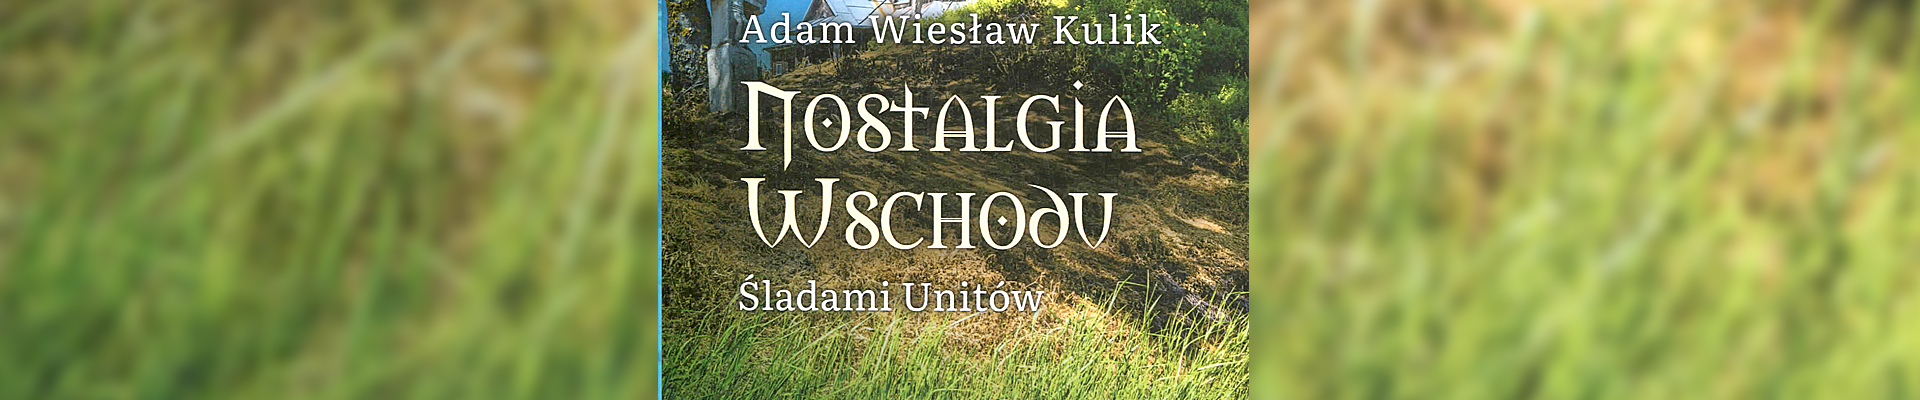 Spotkanie autorskie i promocja książki – „Nostalgia Wschodu. Śladami unitów” — Adam Wiesław Kulik